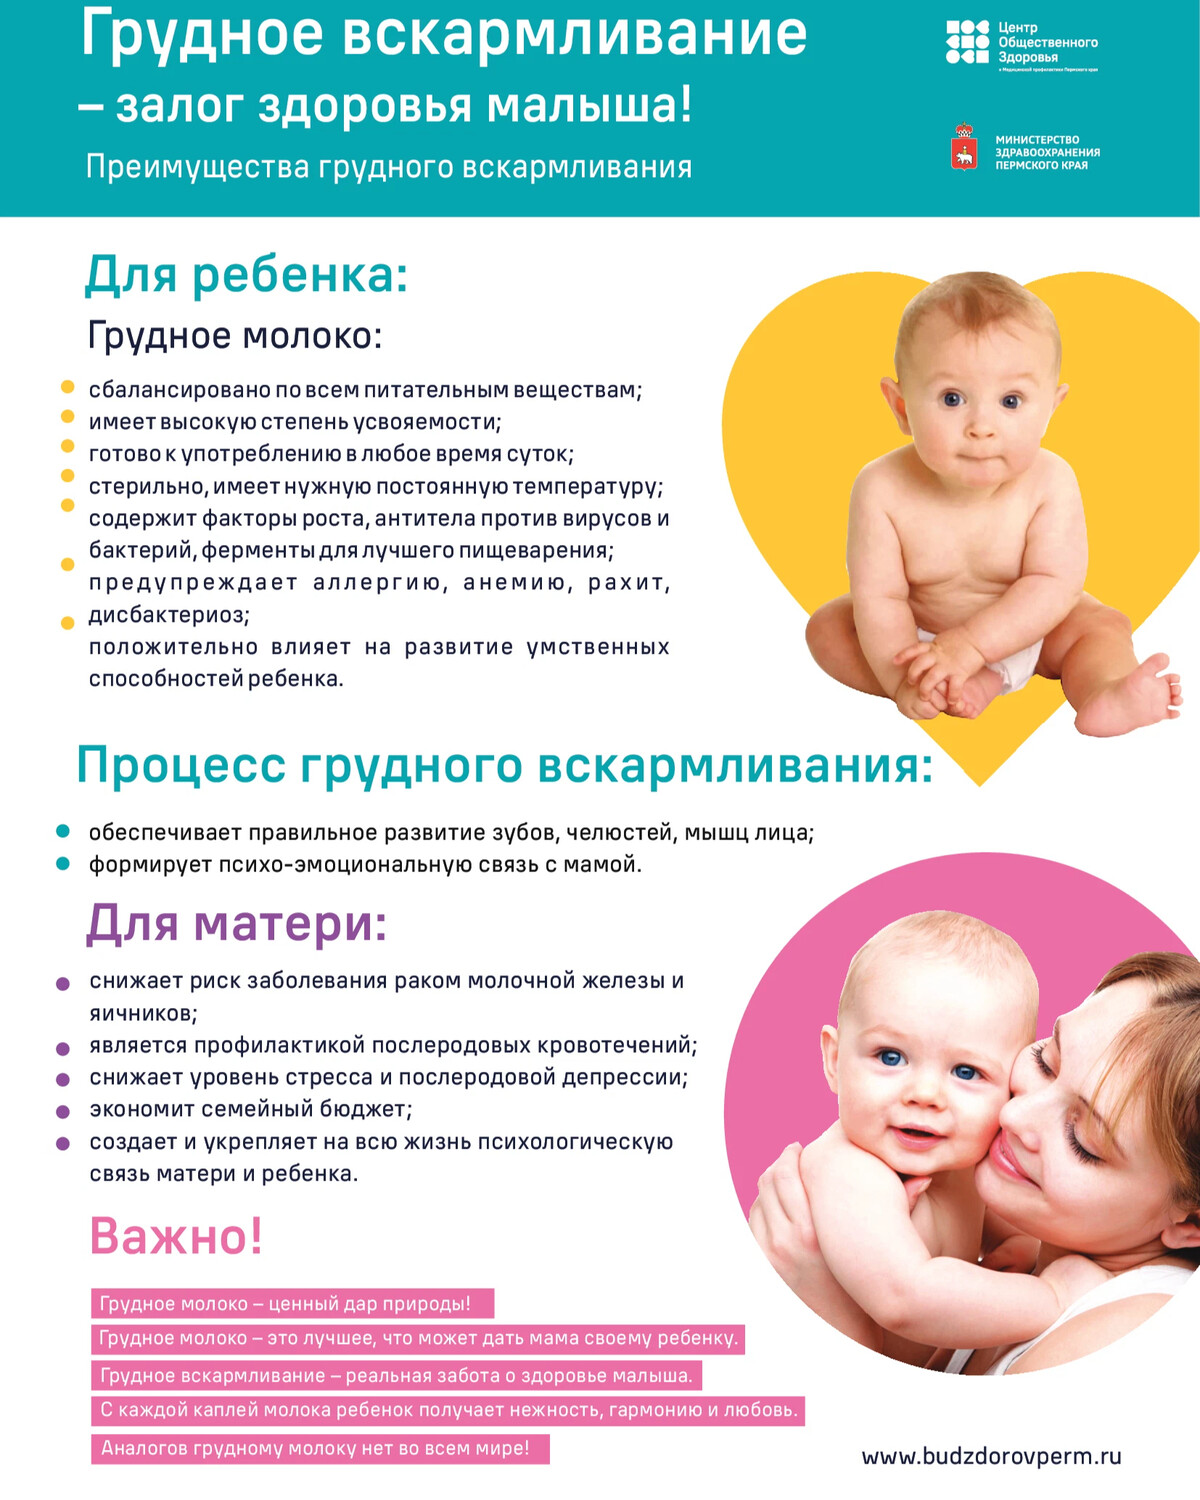 Всемирная неделя грудного вскармливания - world breastfeeding week